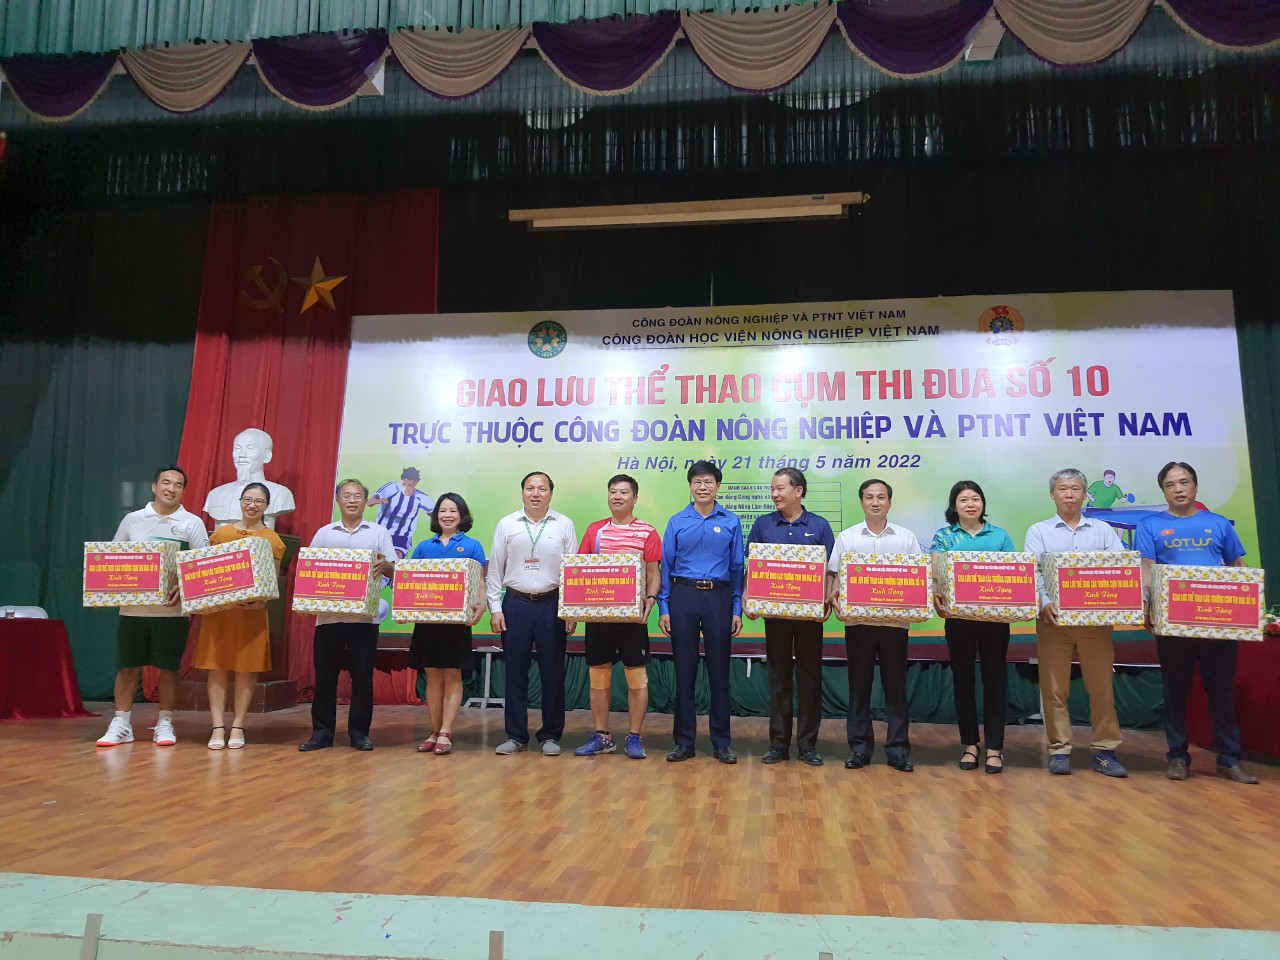 Công đoàn Học viện Nông nghiệp Việt Nam tổ chức giao lưu thể thao - Ảnh 3.